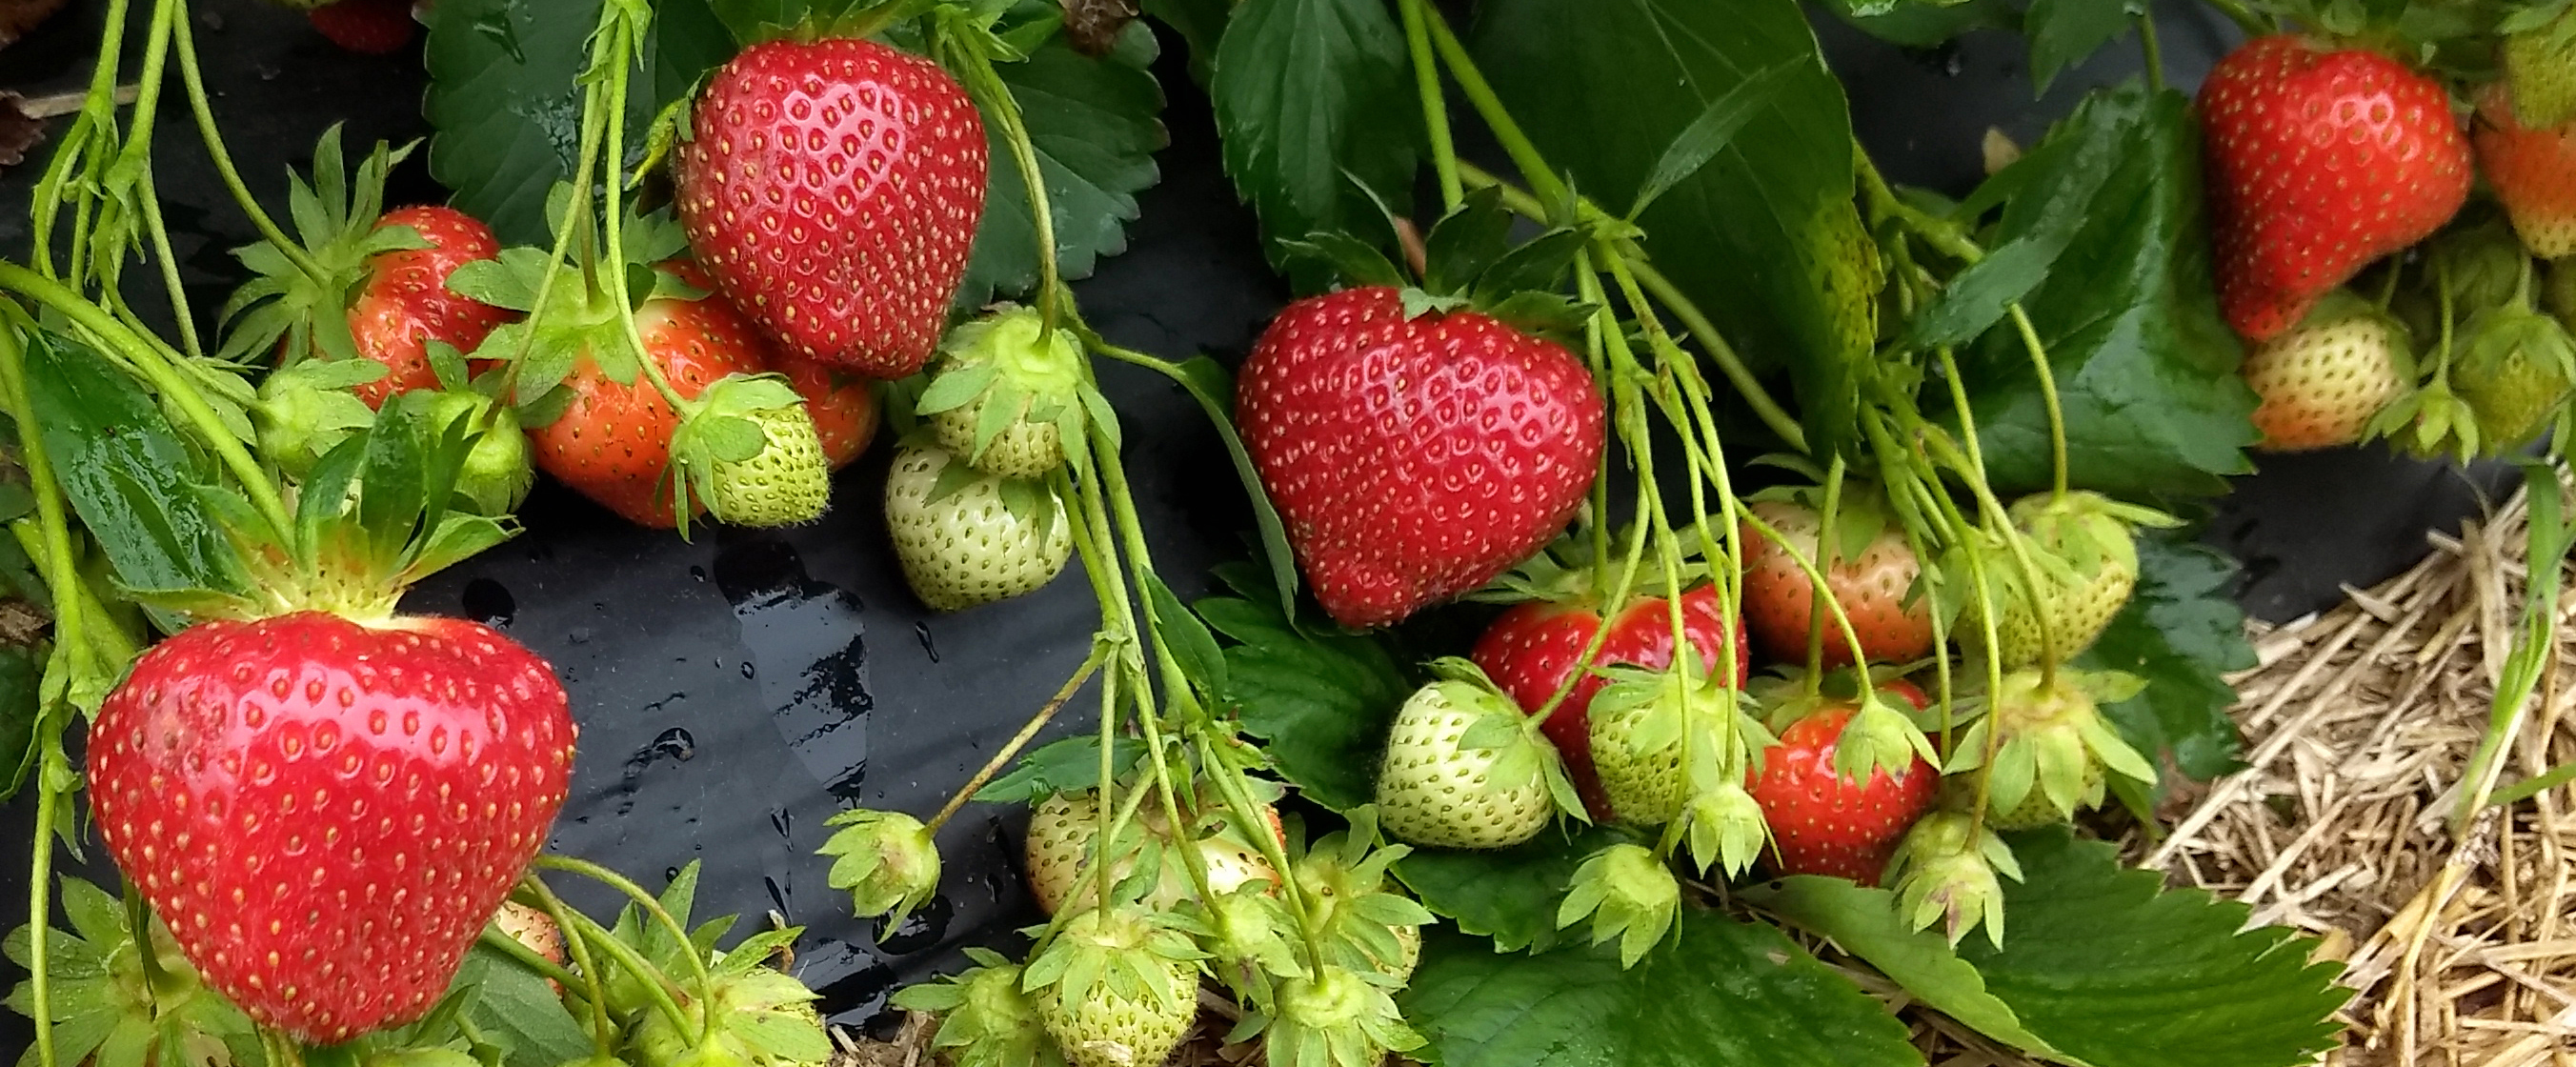 Strawberries growing 